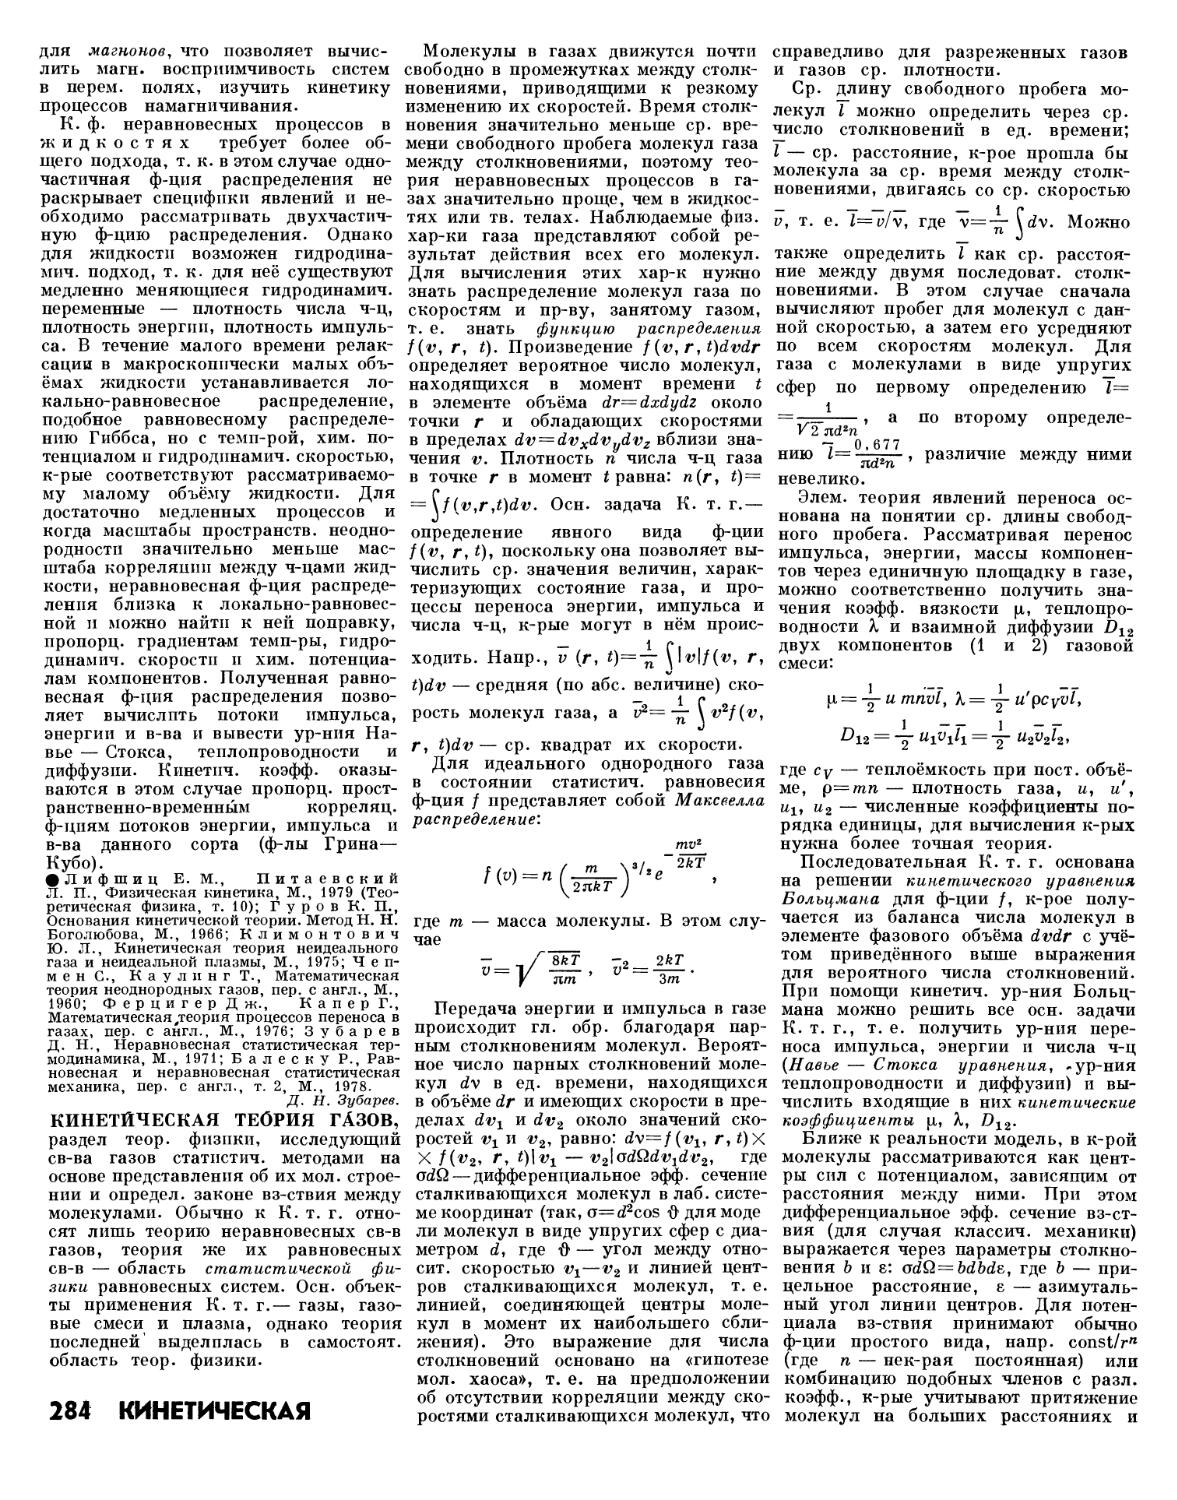 Грина- Кубо ф-ла 284 /1
Кинетическая теория газов 284
Кинетические коэфф. 284